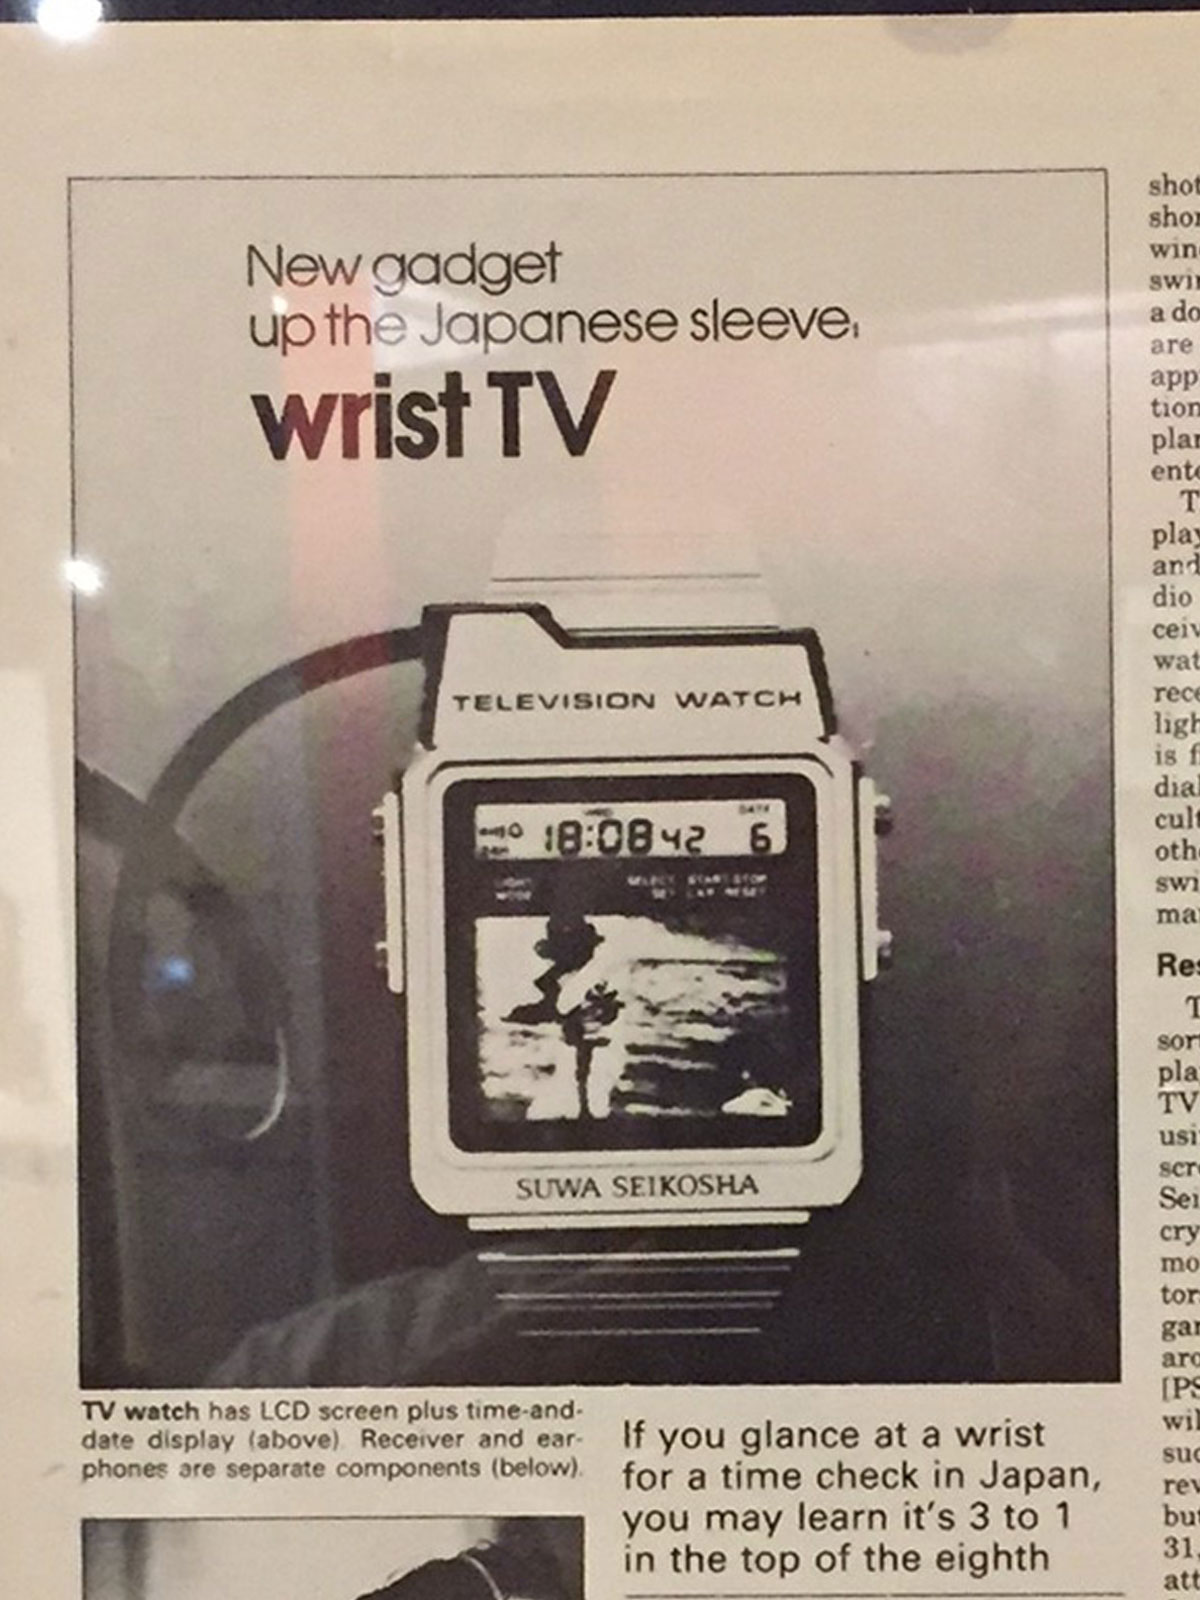 Seiko Television Watch advertisement